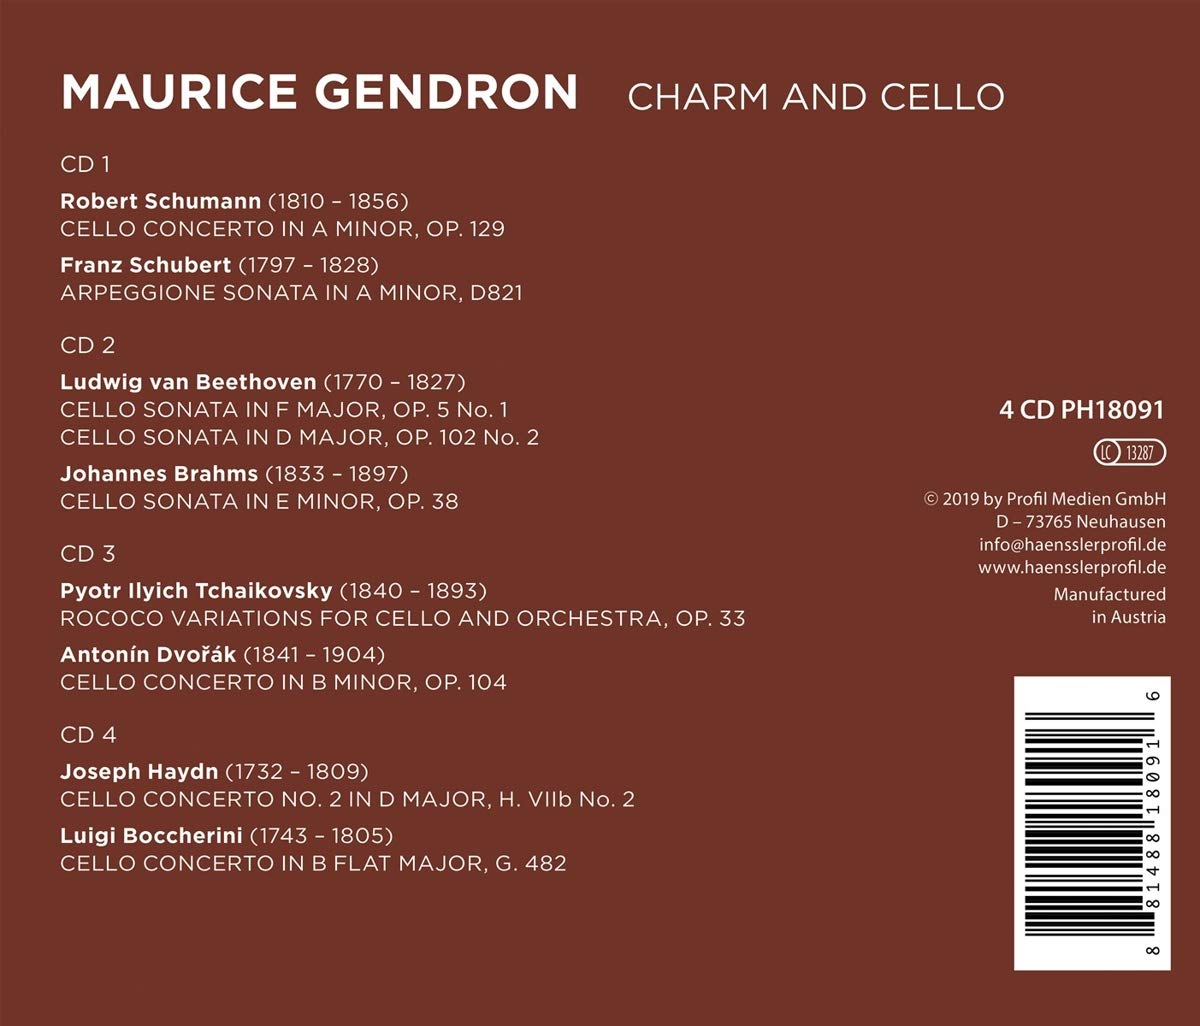 모리스 장드롱 첼로 녹음 선집 (Maurice Gendron - Charm and Cello)